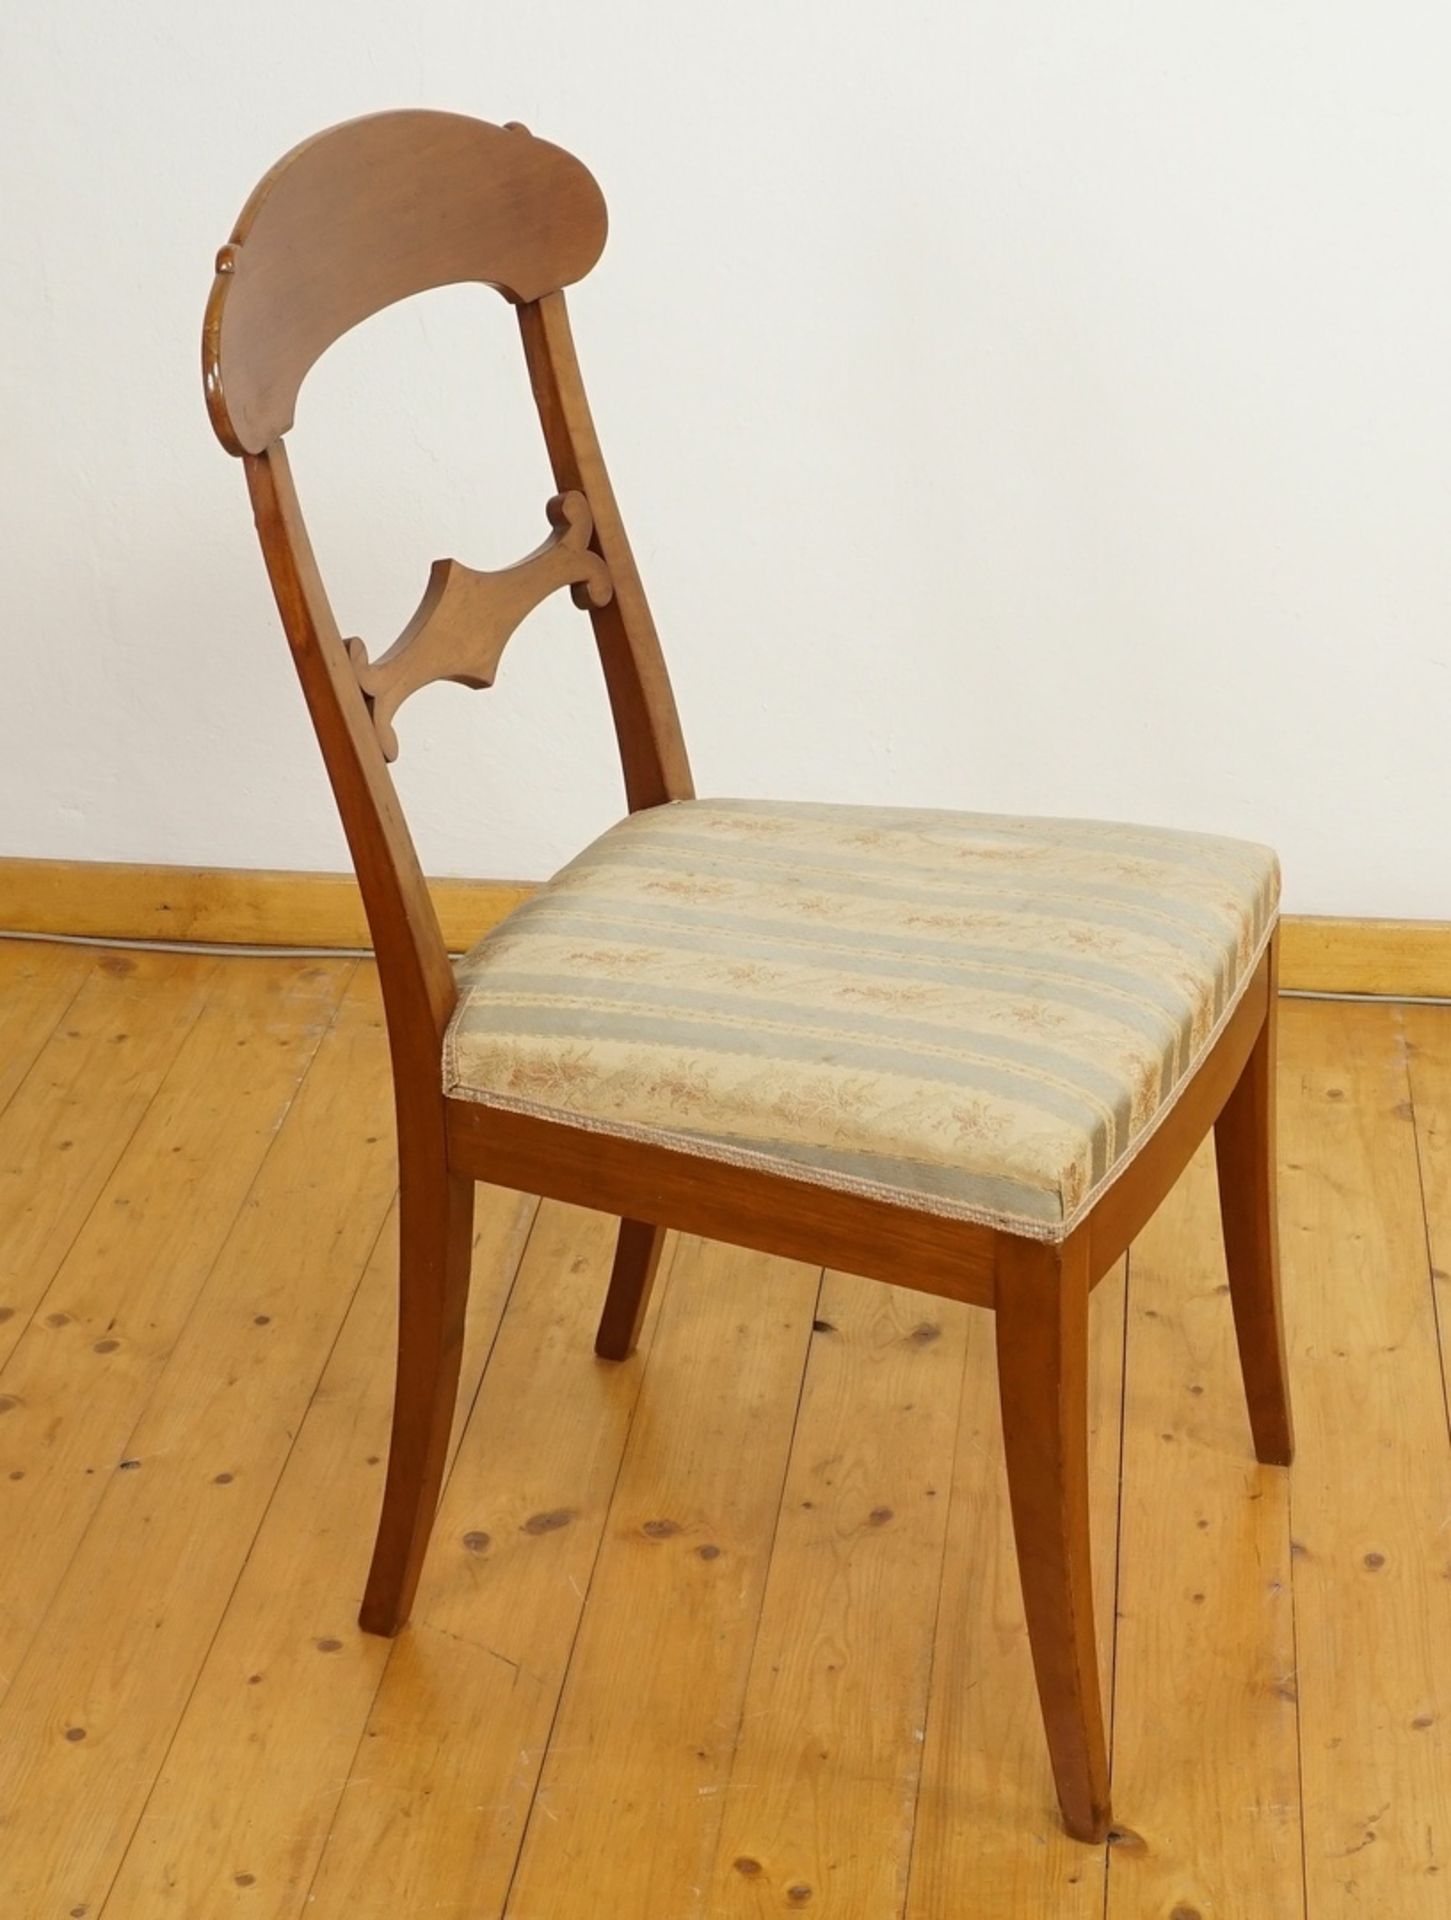 Zwei Stühle im Biedermeierstil, Nussbaum - Bild 2 aus 5